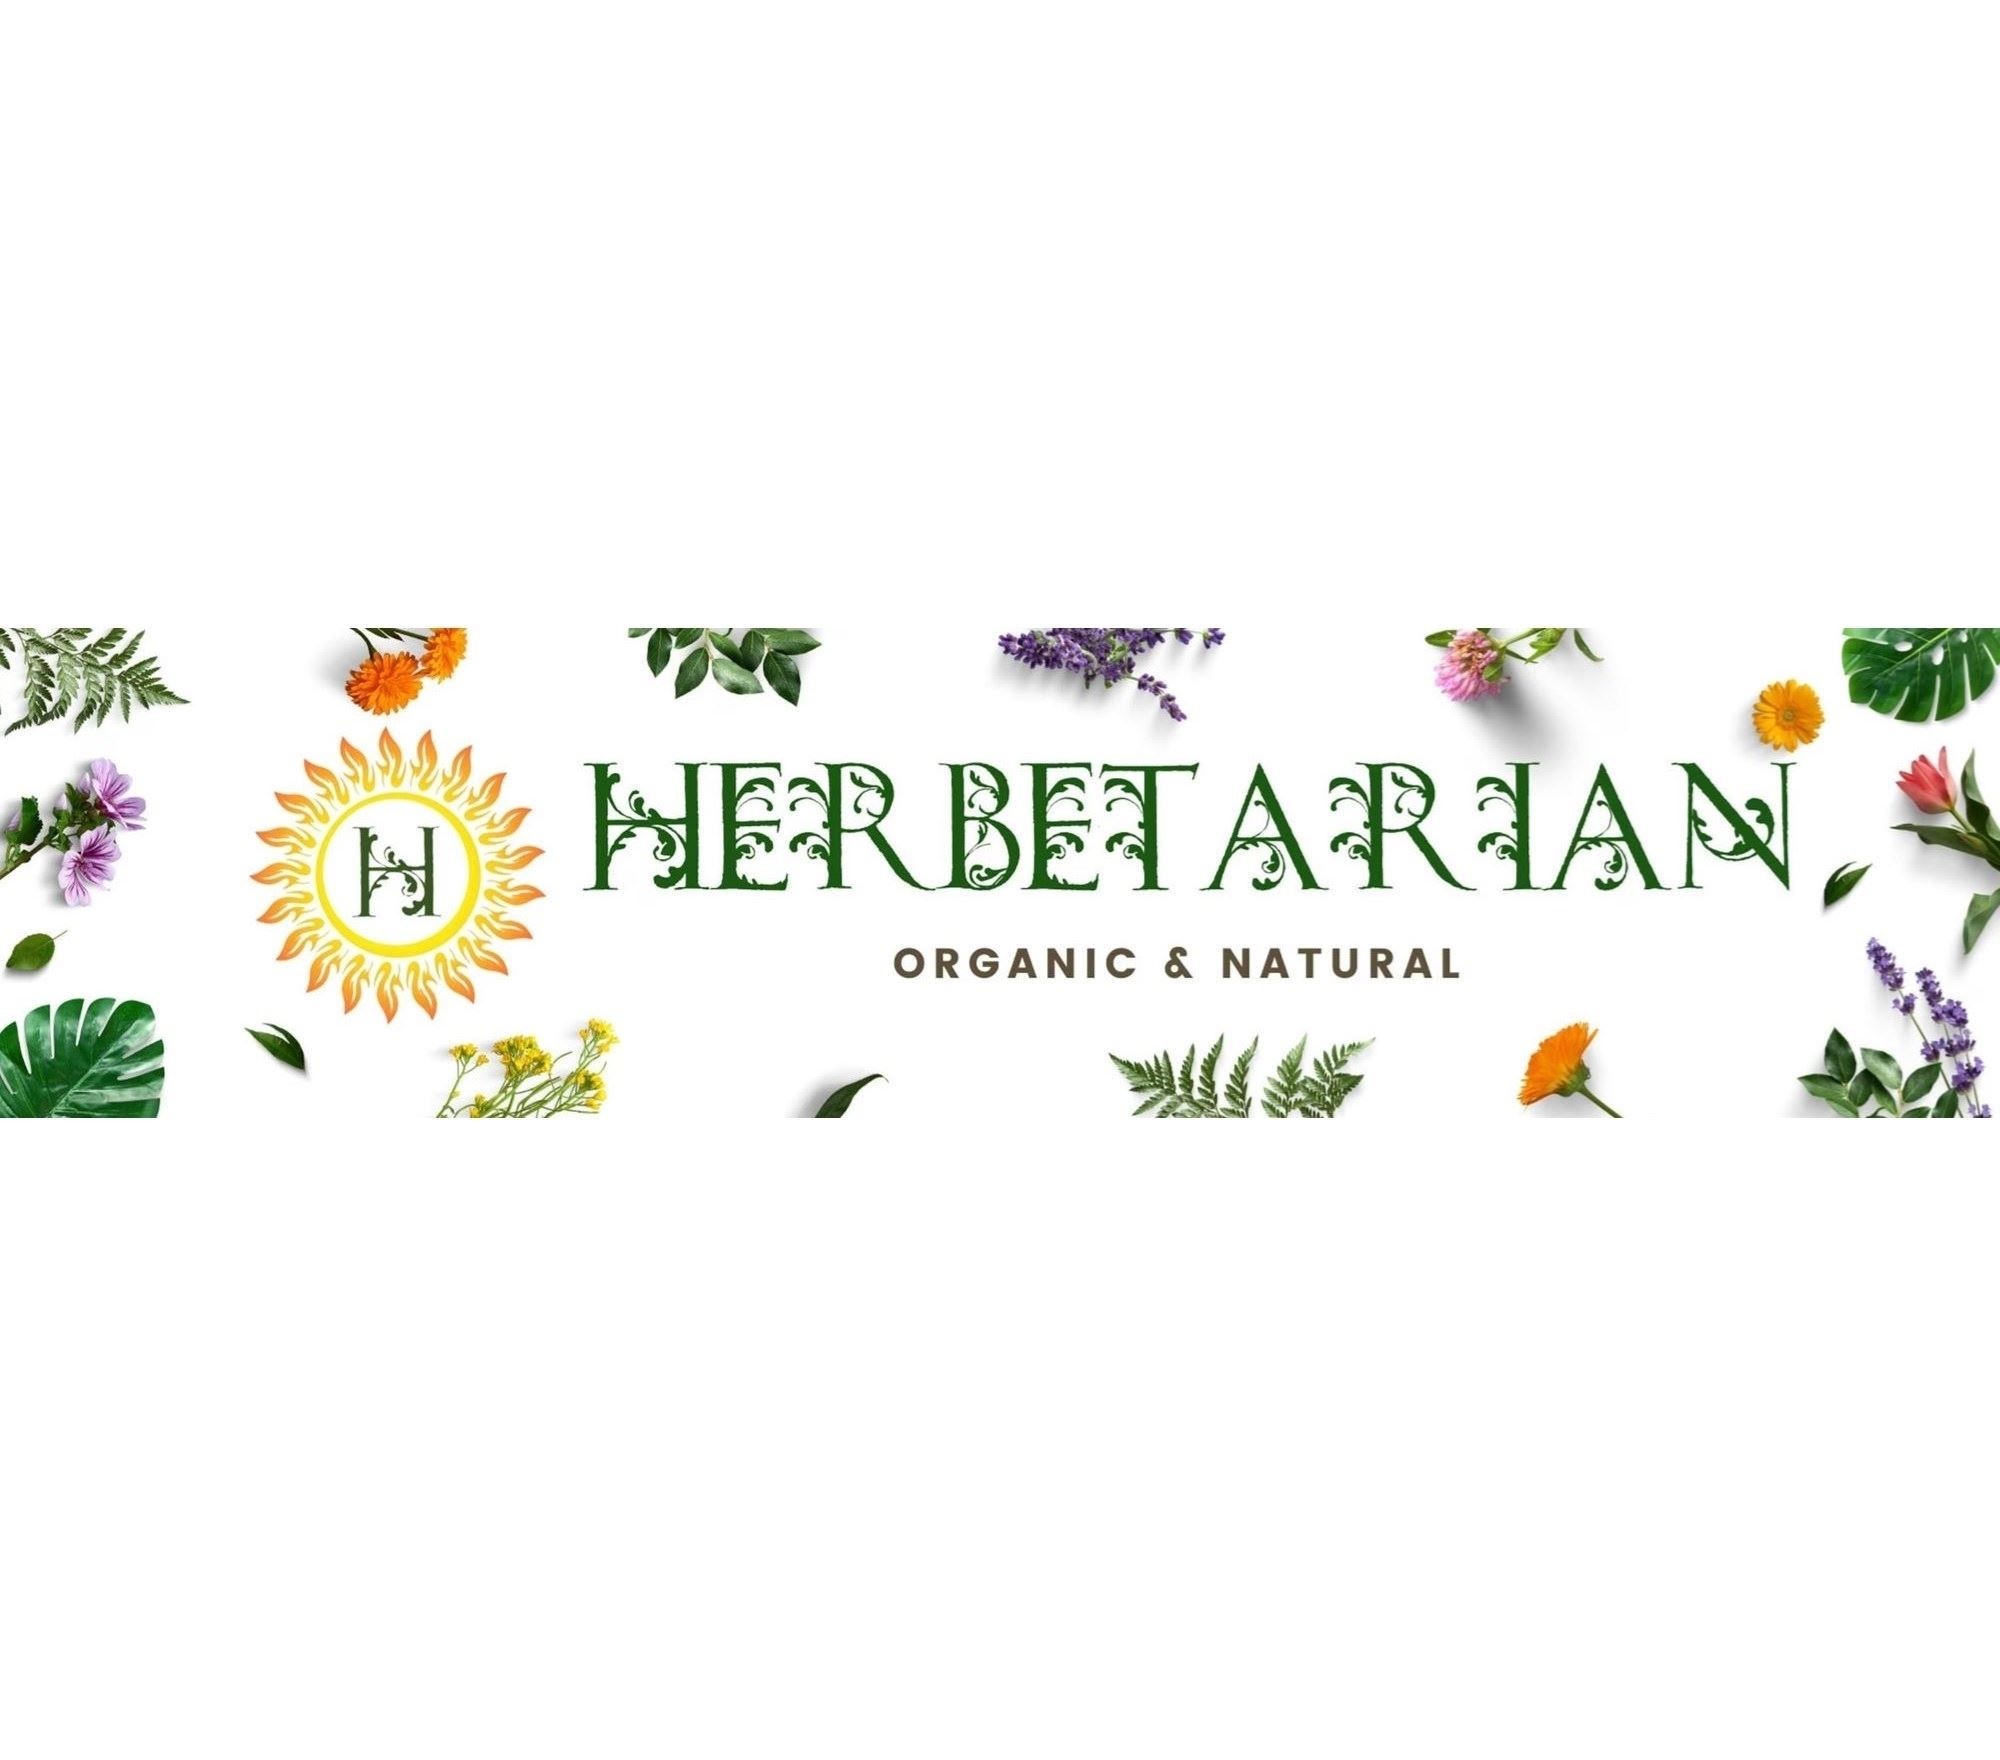 Herbetarian